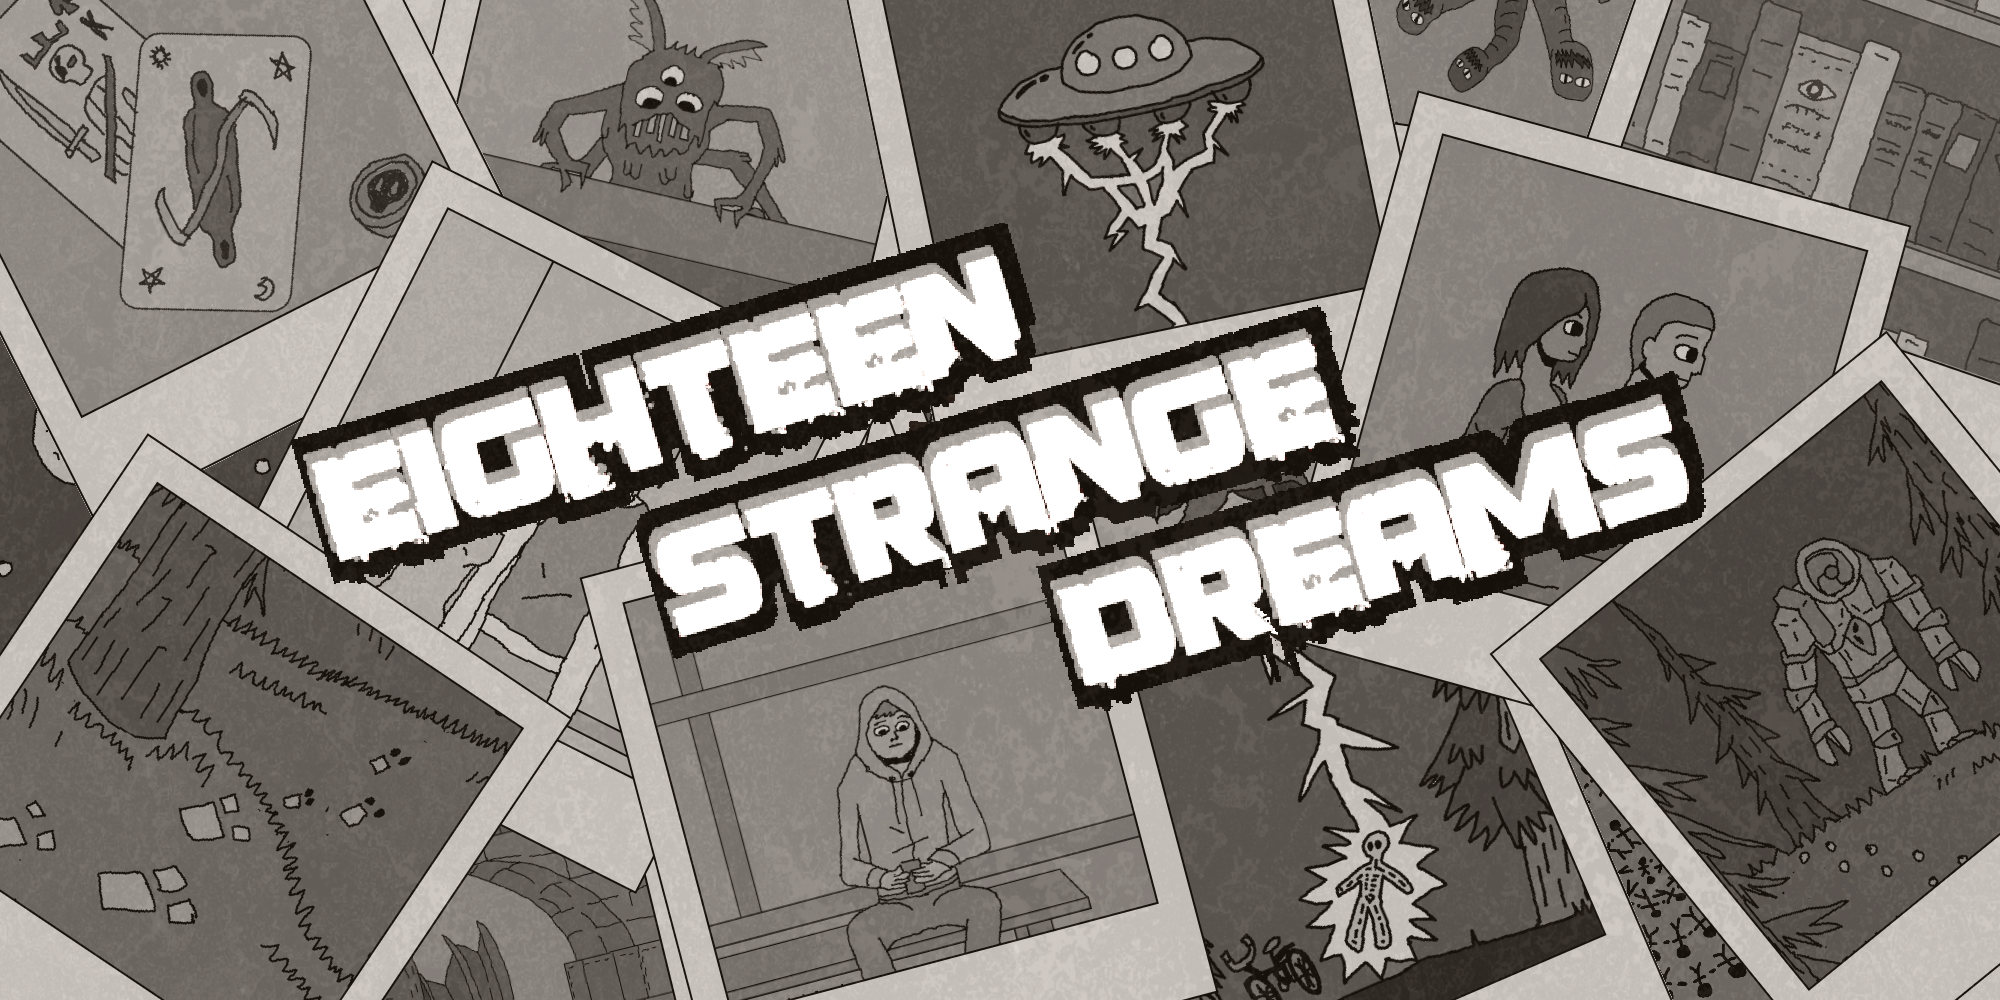 Eighteen Strange Dreams